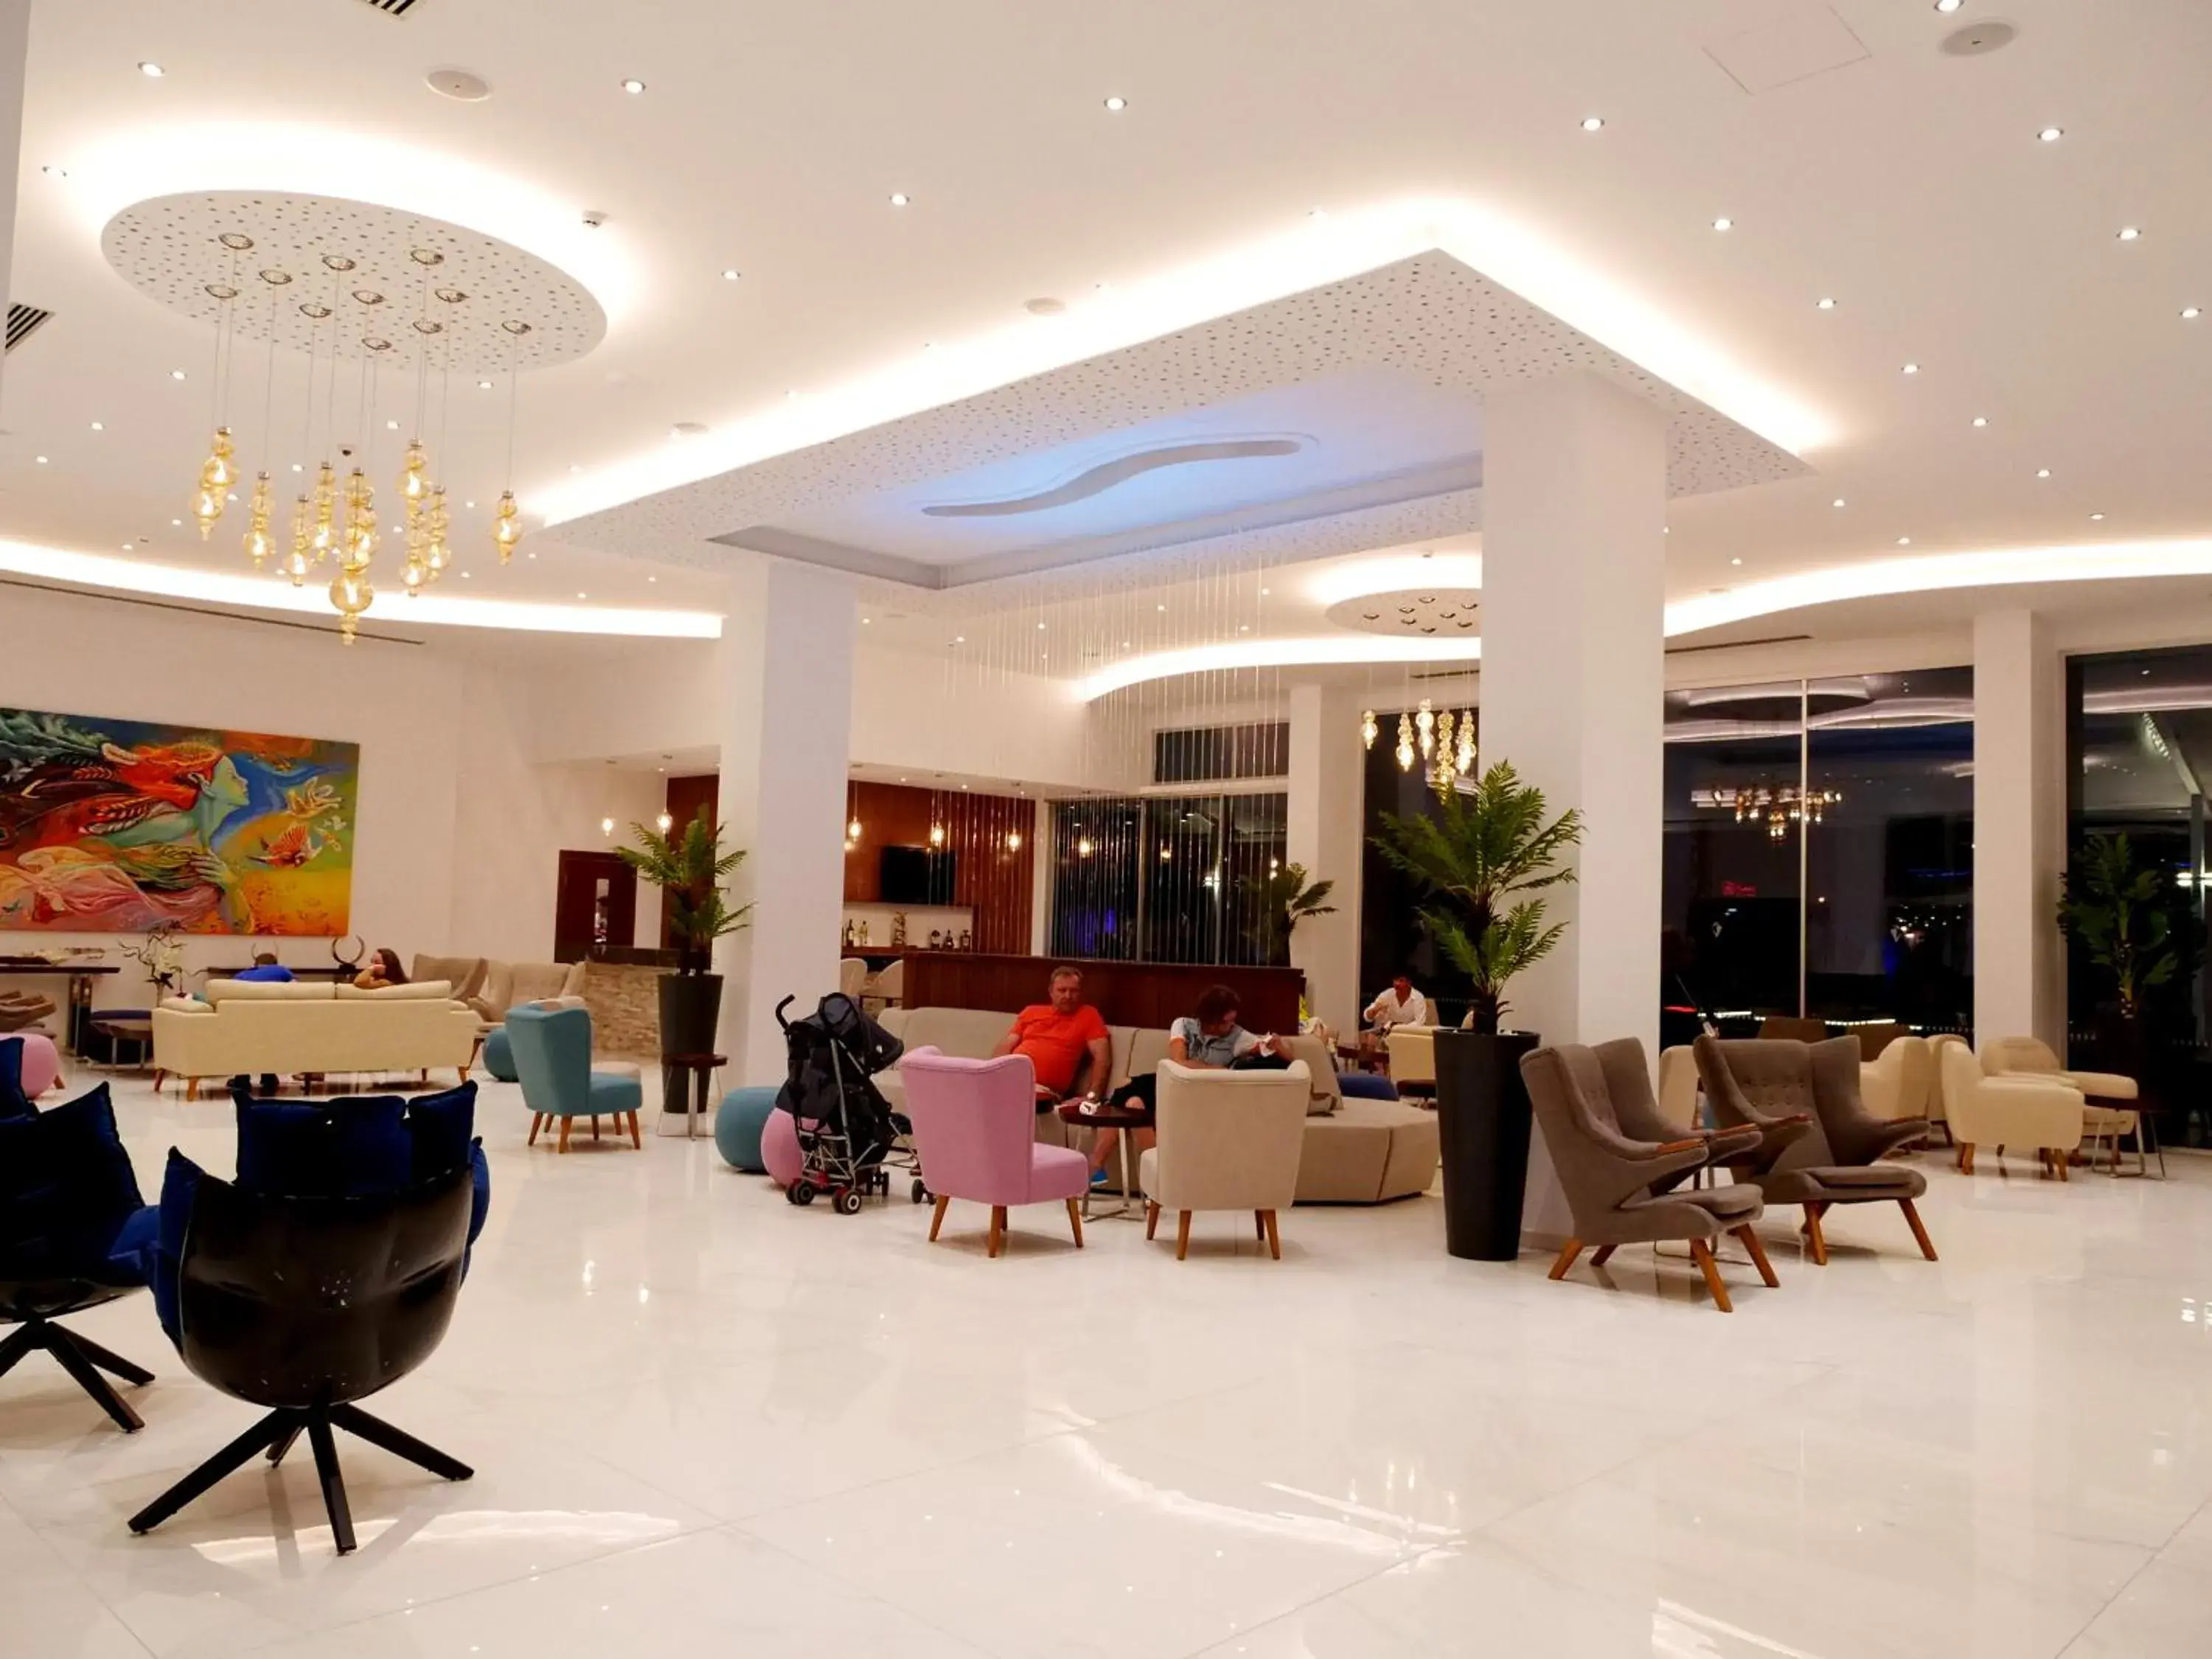 Lobby or reception in Amethyst Napa Hotel & Spa